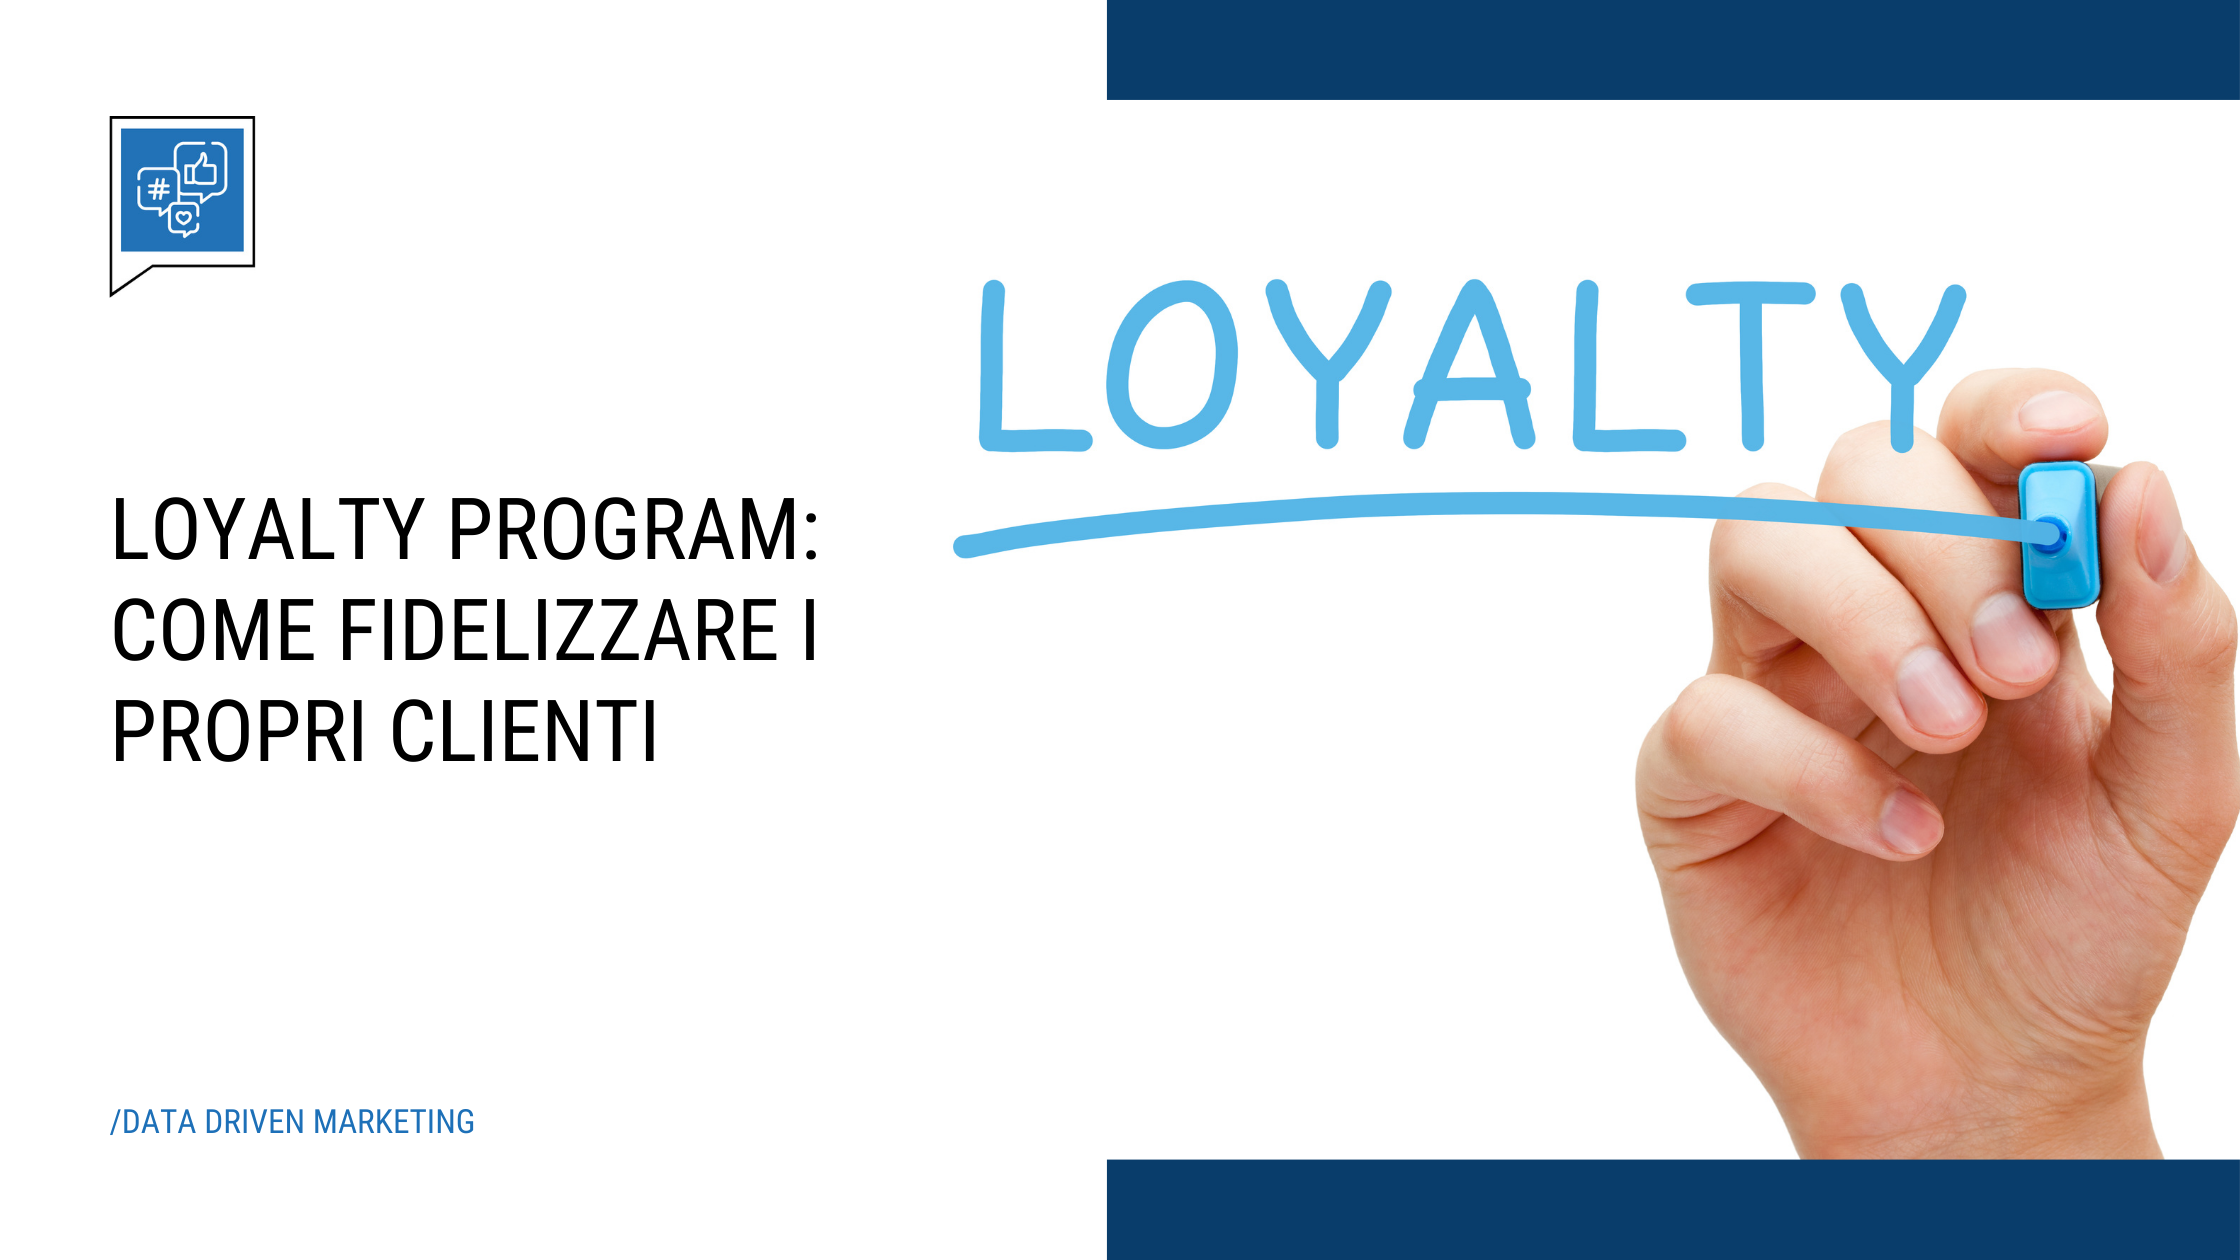 Loyalty program: come fidelizzare i propri clienti